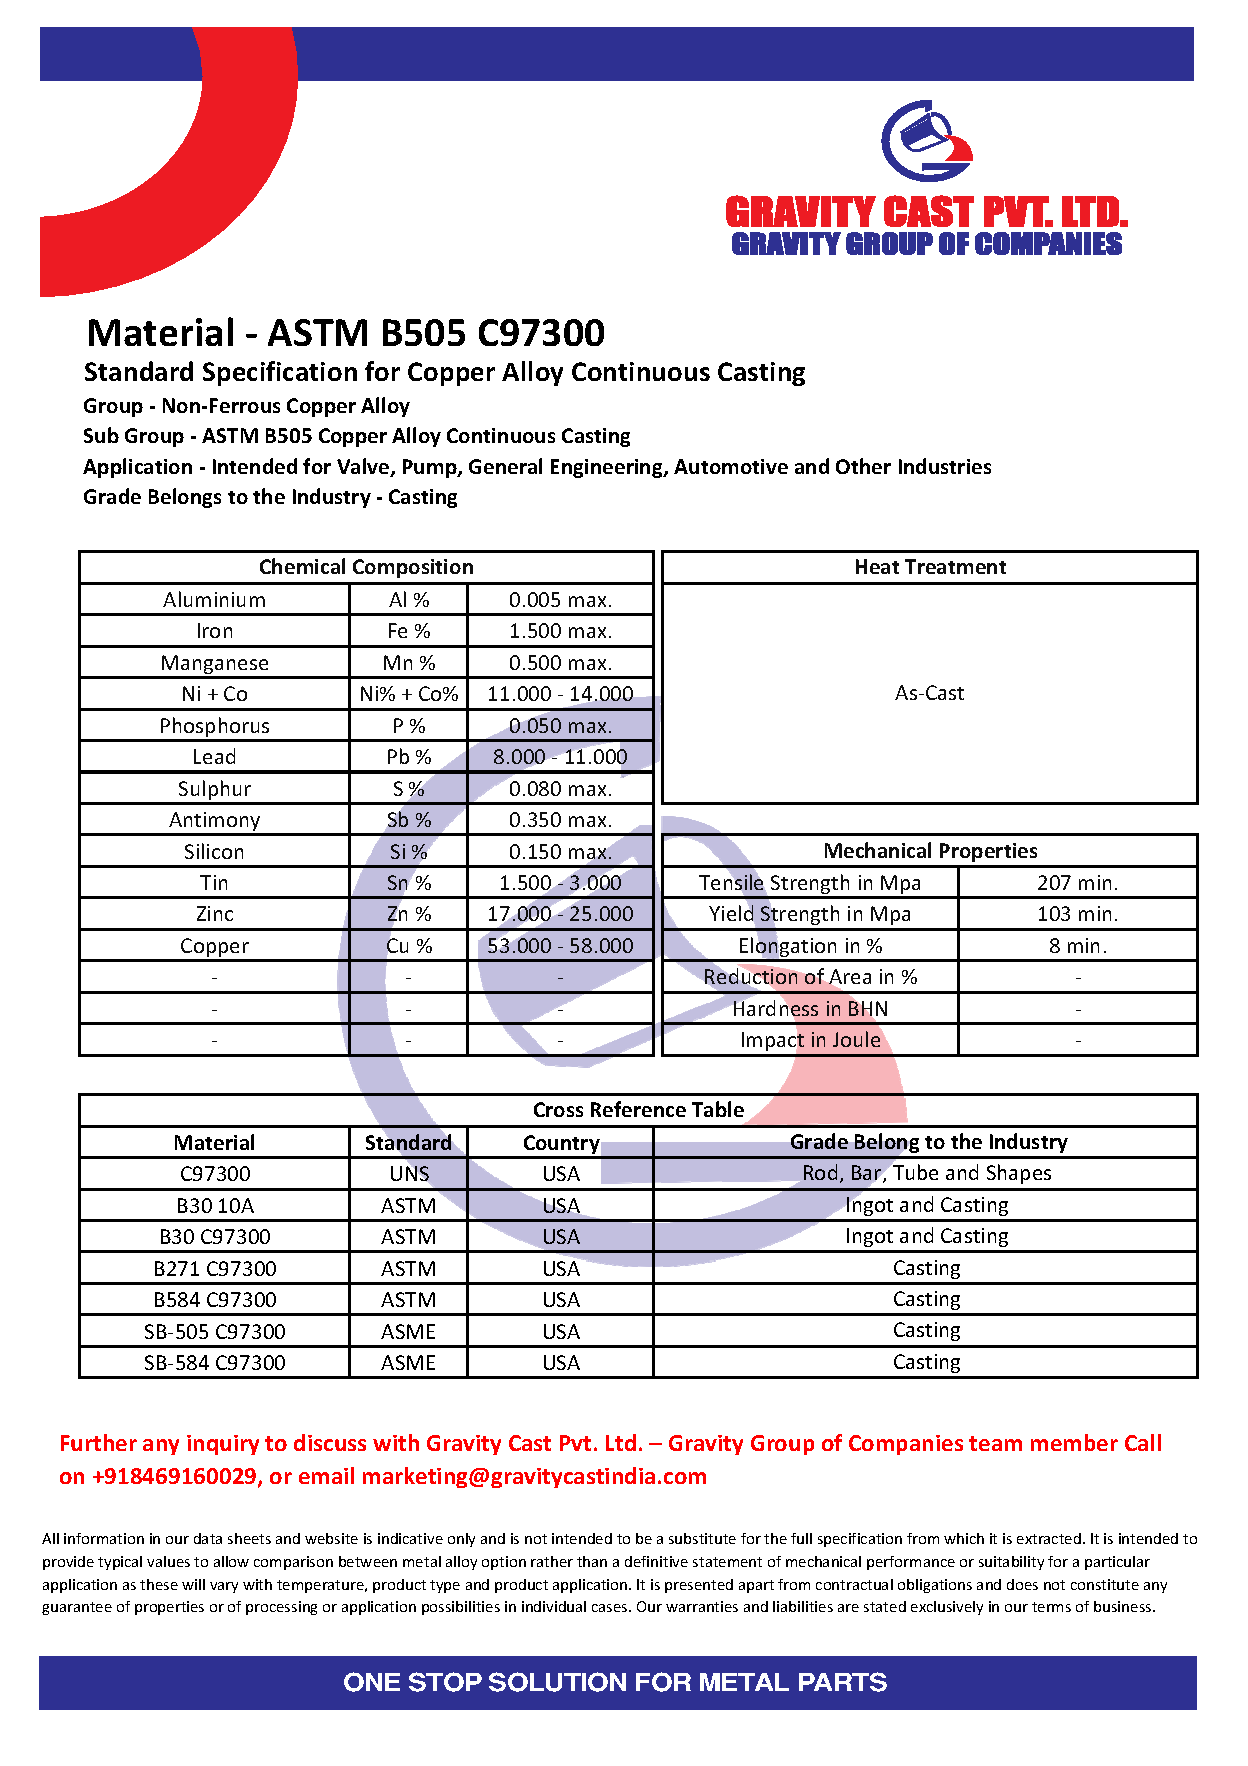 ASTM B505 C97300.pdf